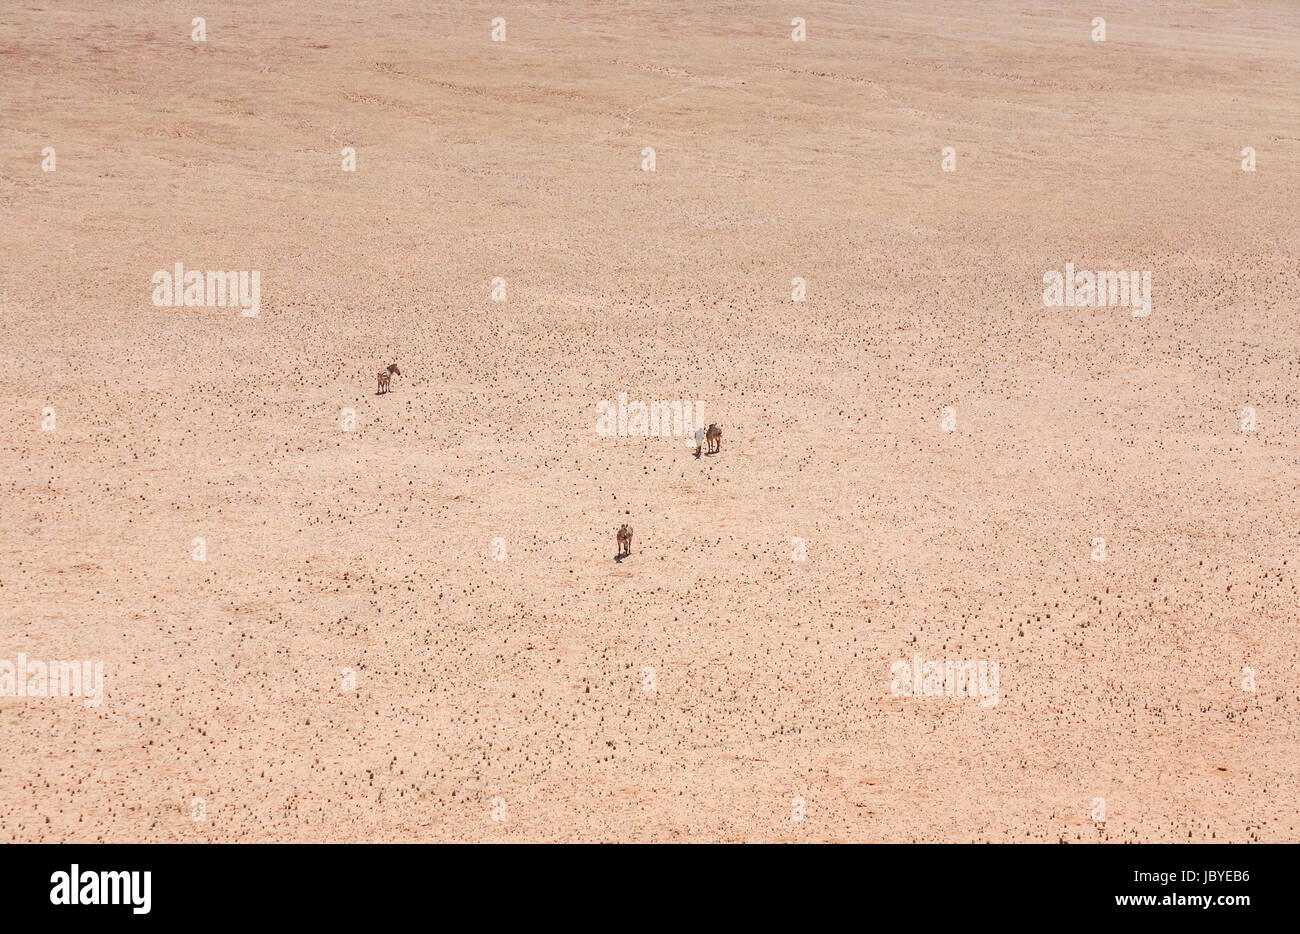 Verwüstung, Entfernung: vier Bergzebra (Equus Zebra) stehen in der Ukelei brennend heiß, strukturlose Namib-Wüste, Namibia, Südwest-Afrika Stockfoto